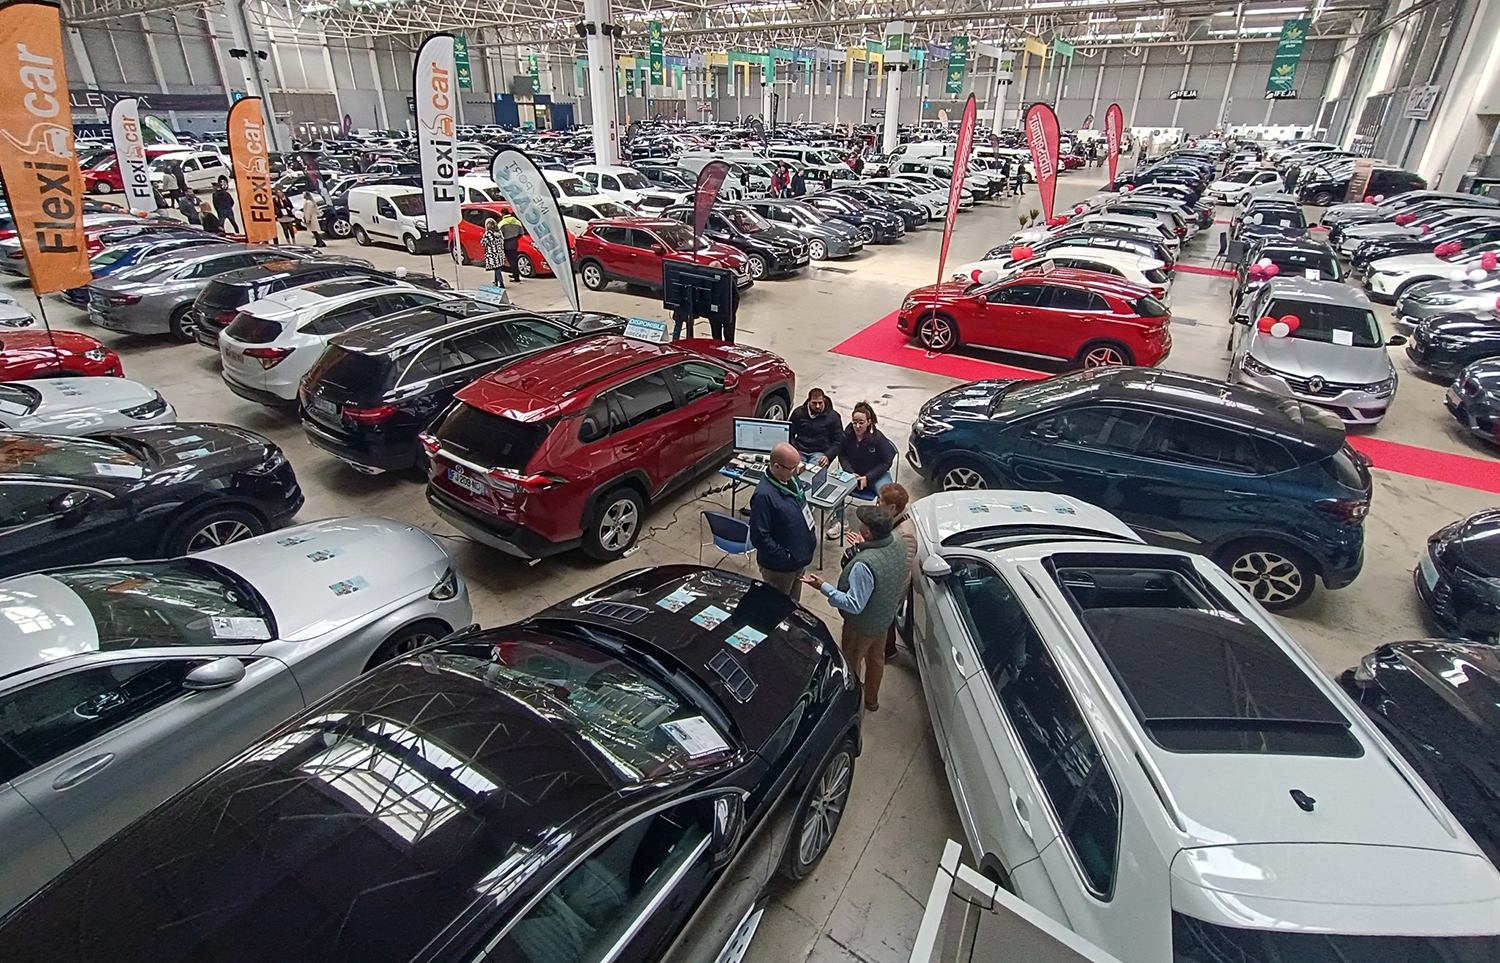 El XVI Salón del Vehículo de Ocasión y Seminuevo se consolida como una gran plataforma comercial para los coches usados